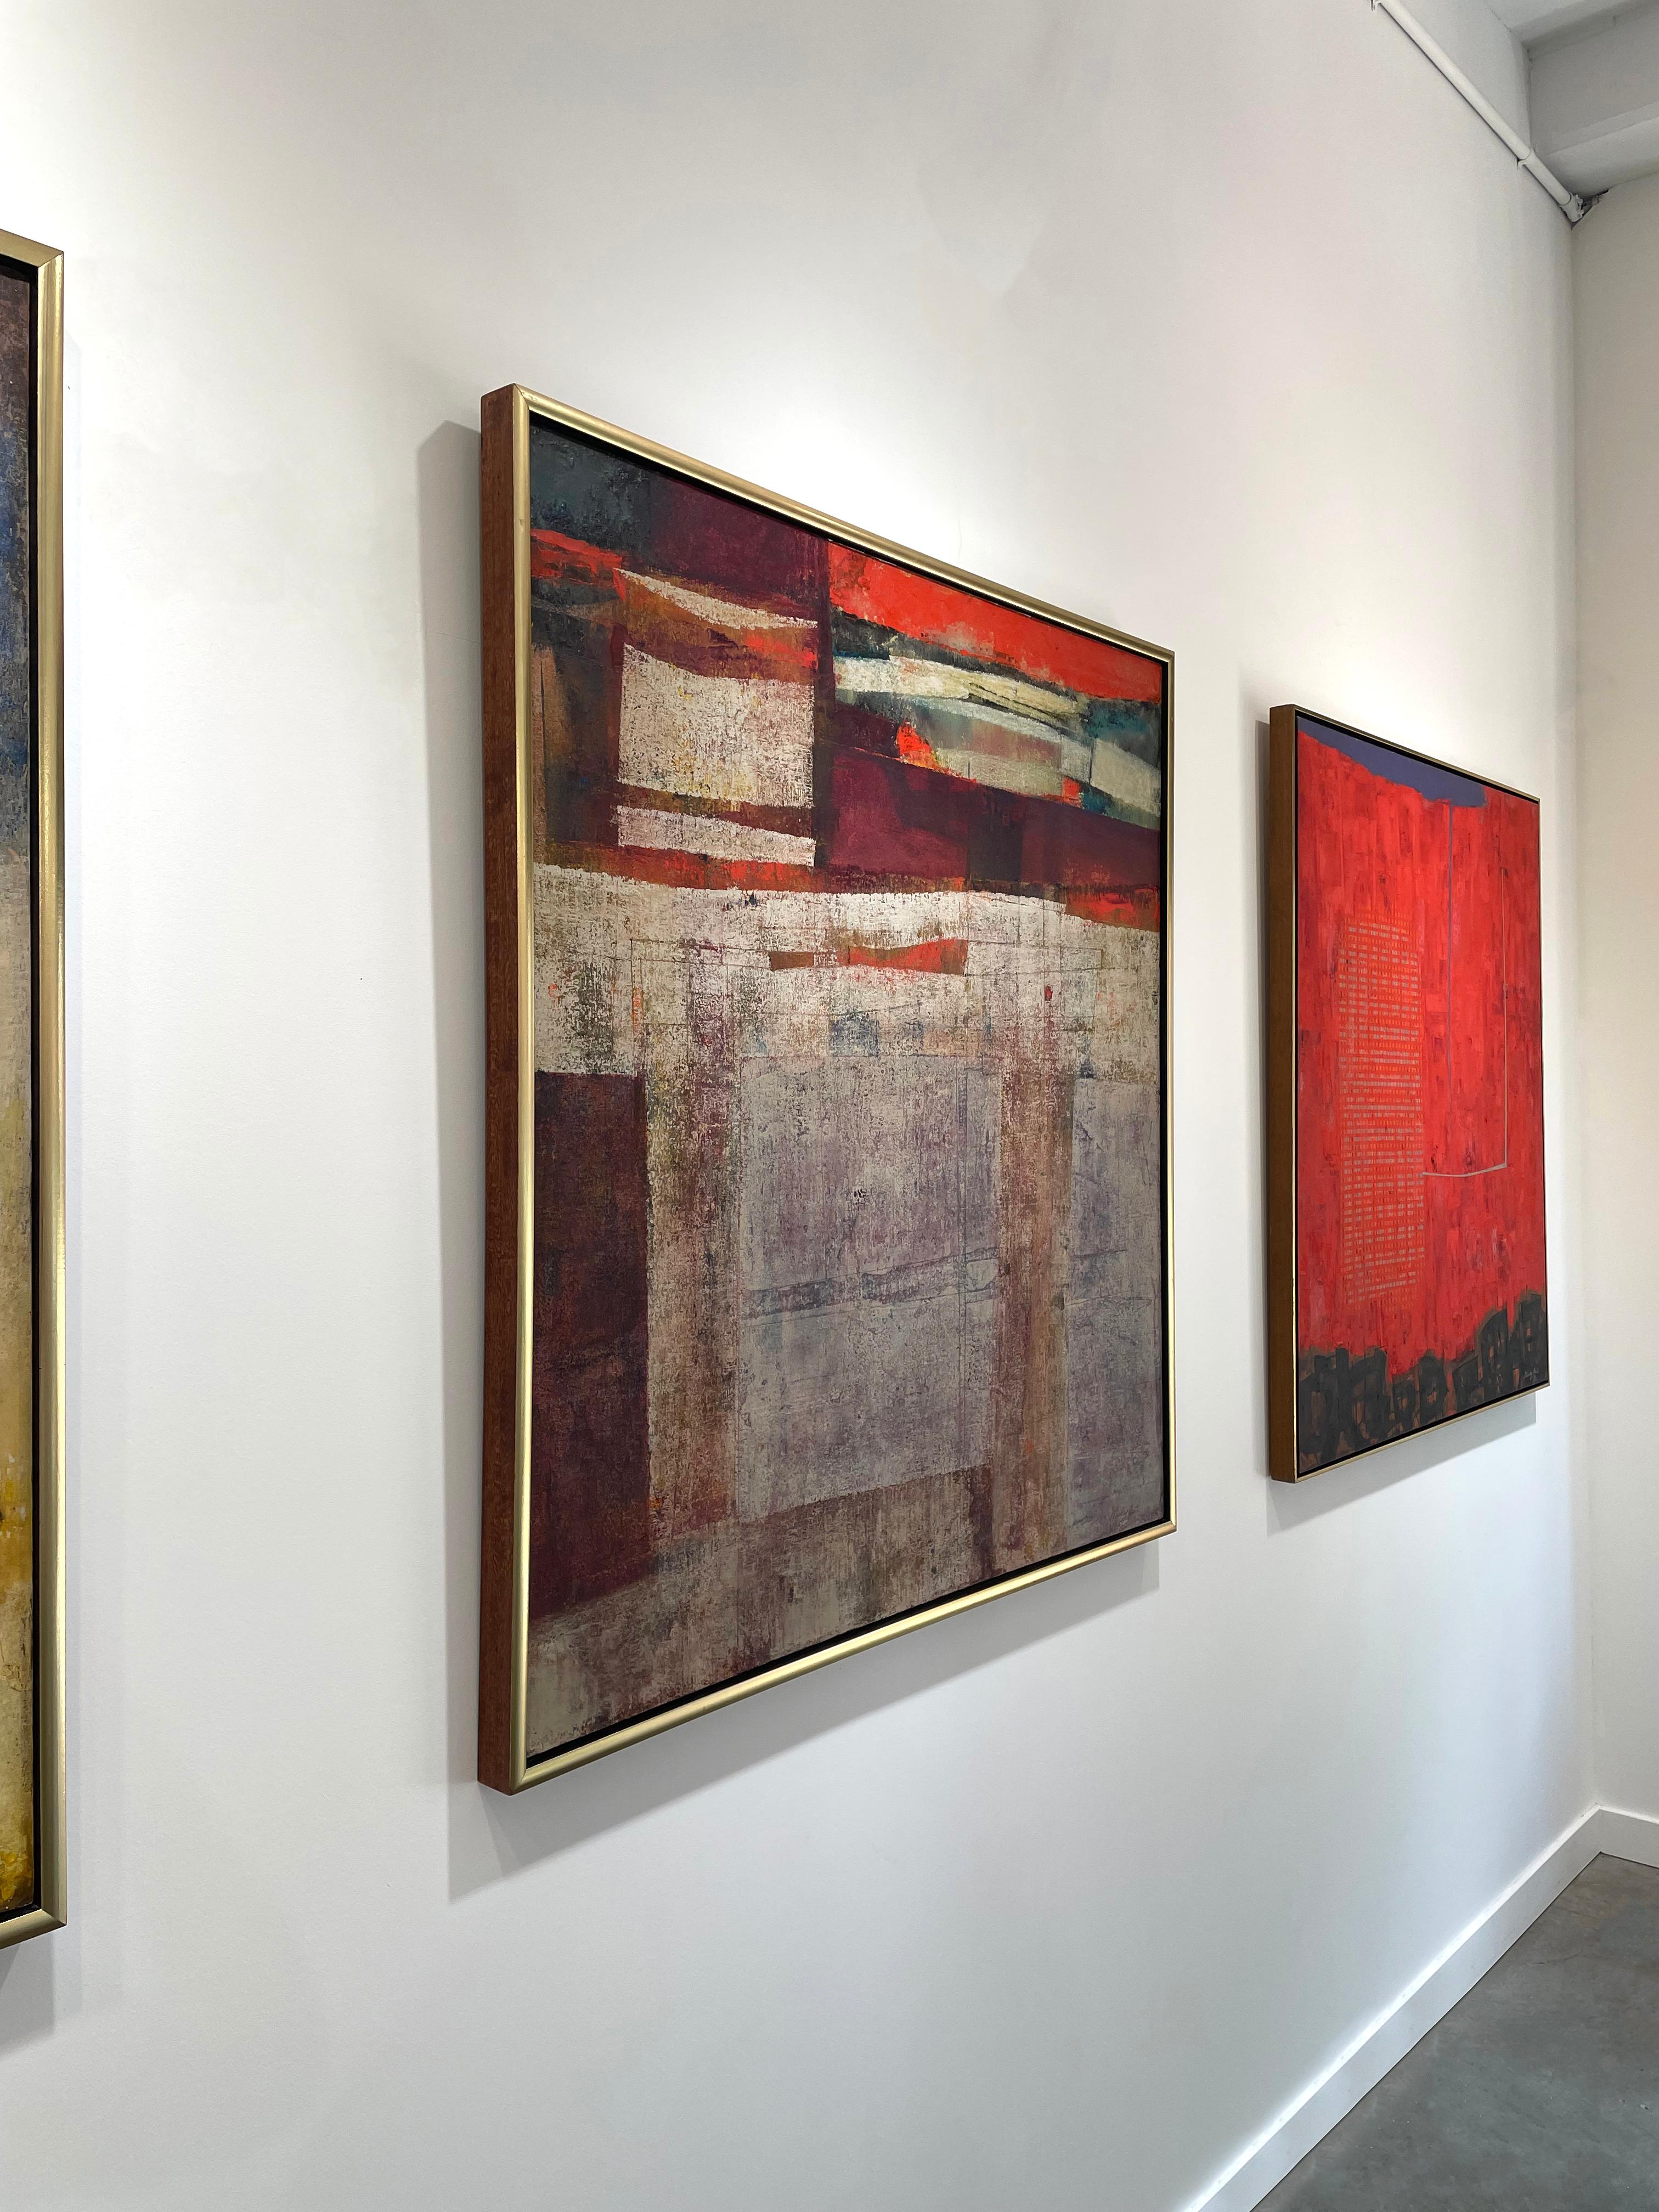 Cette œuvre abstraite moderne originale de l'expressionniste abstrait Stanley Bate présente une palette chaude et terreuse. Les formes organiques et rectangulaires y sont superposées à des couleurs sarcelles et crèmes profondes. Les deux tiers